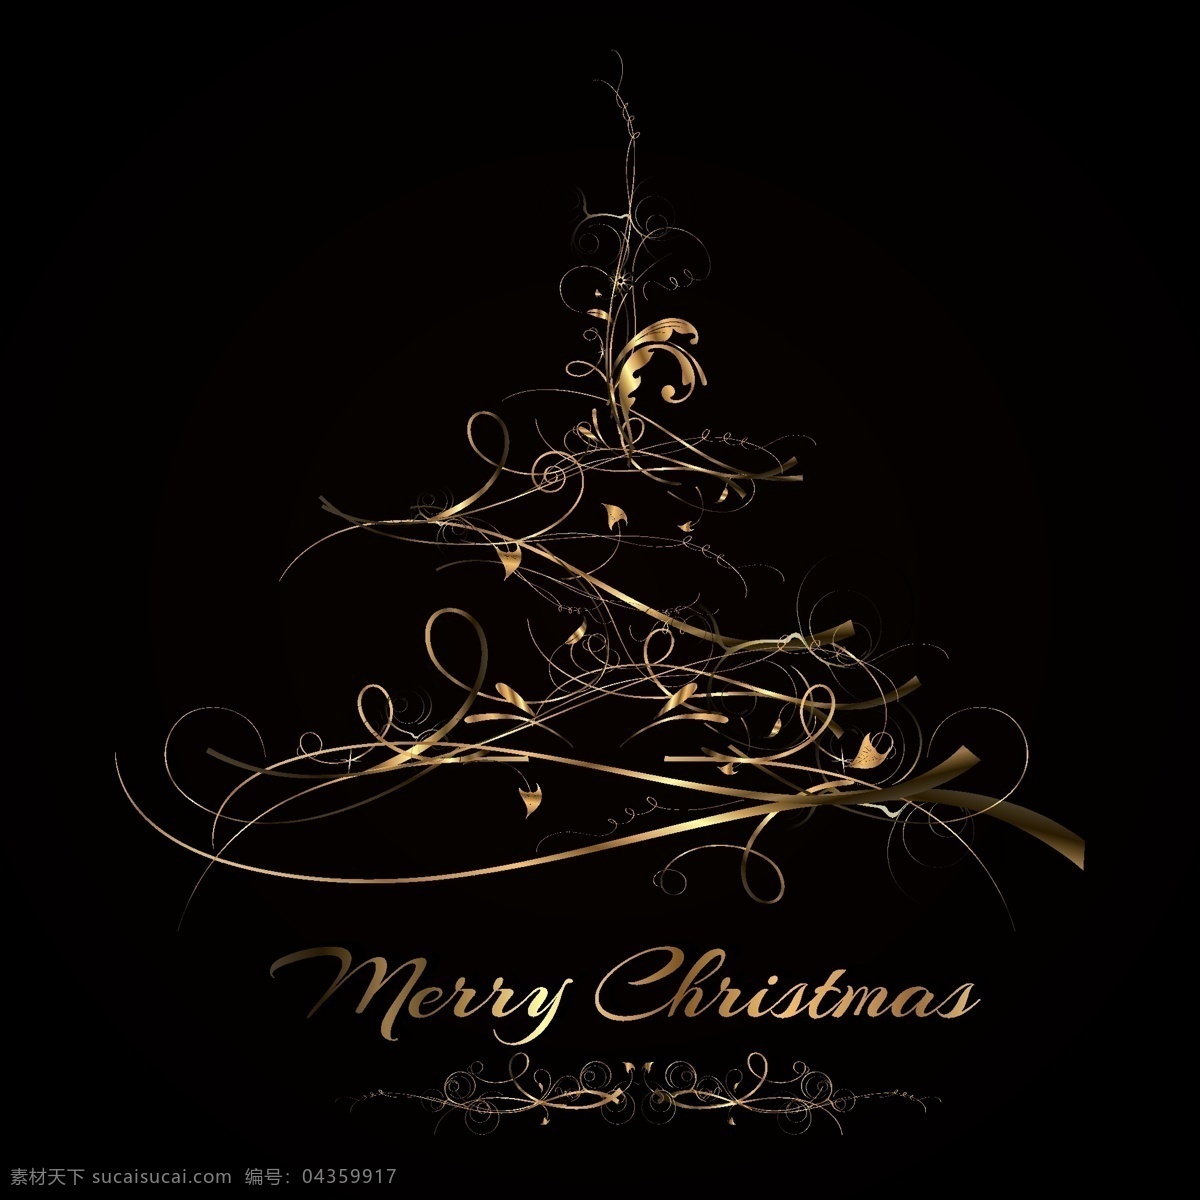 抽象 金色 圣诞树 黑金 枝叶 金属 质感 荆棘 藤蔓 圣诞节 圣诞快乐 merry christmas 矢量素材 黑色